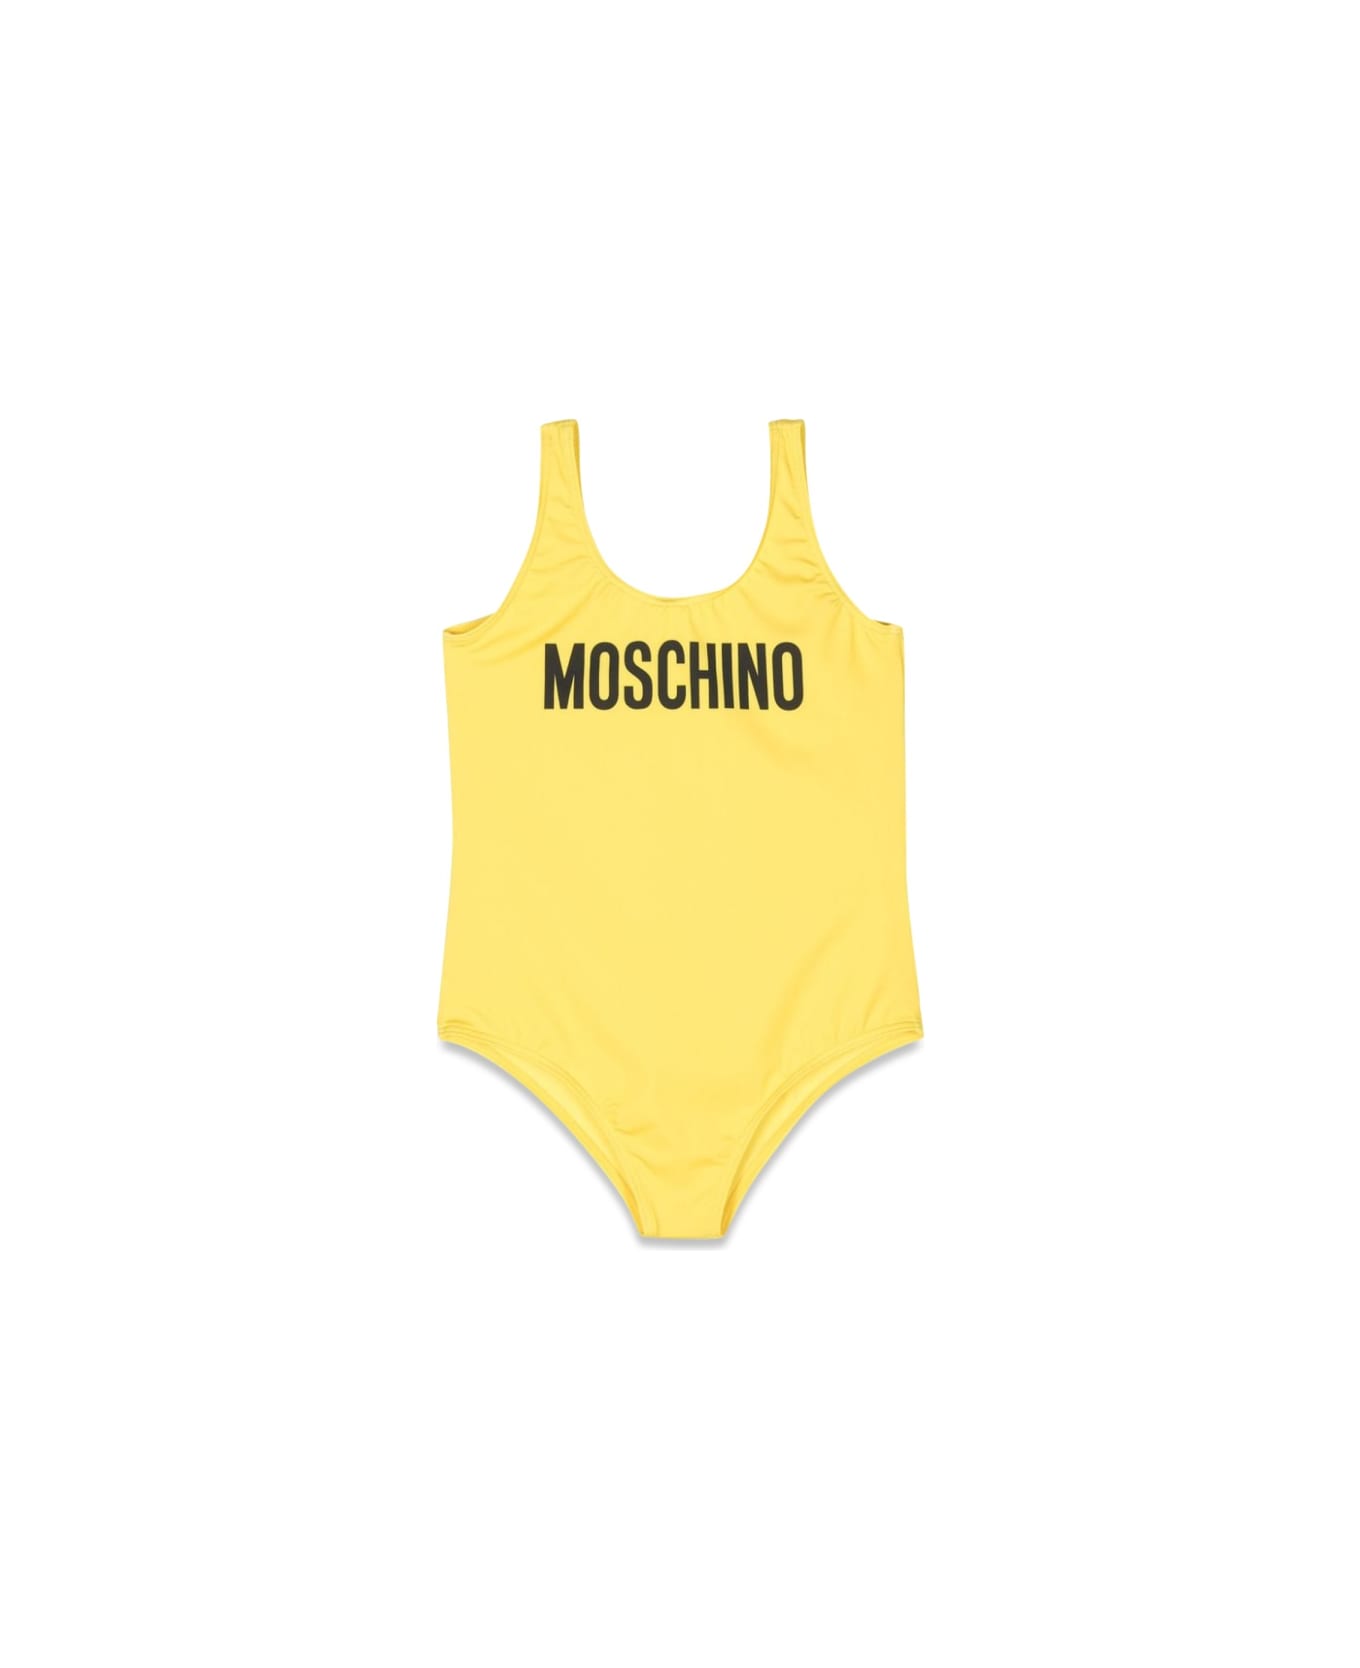 Moschino Swimsuit - YELLOW